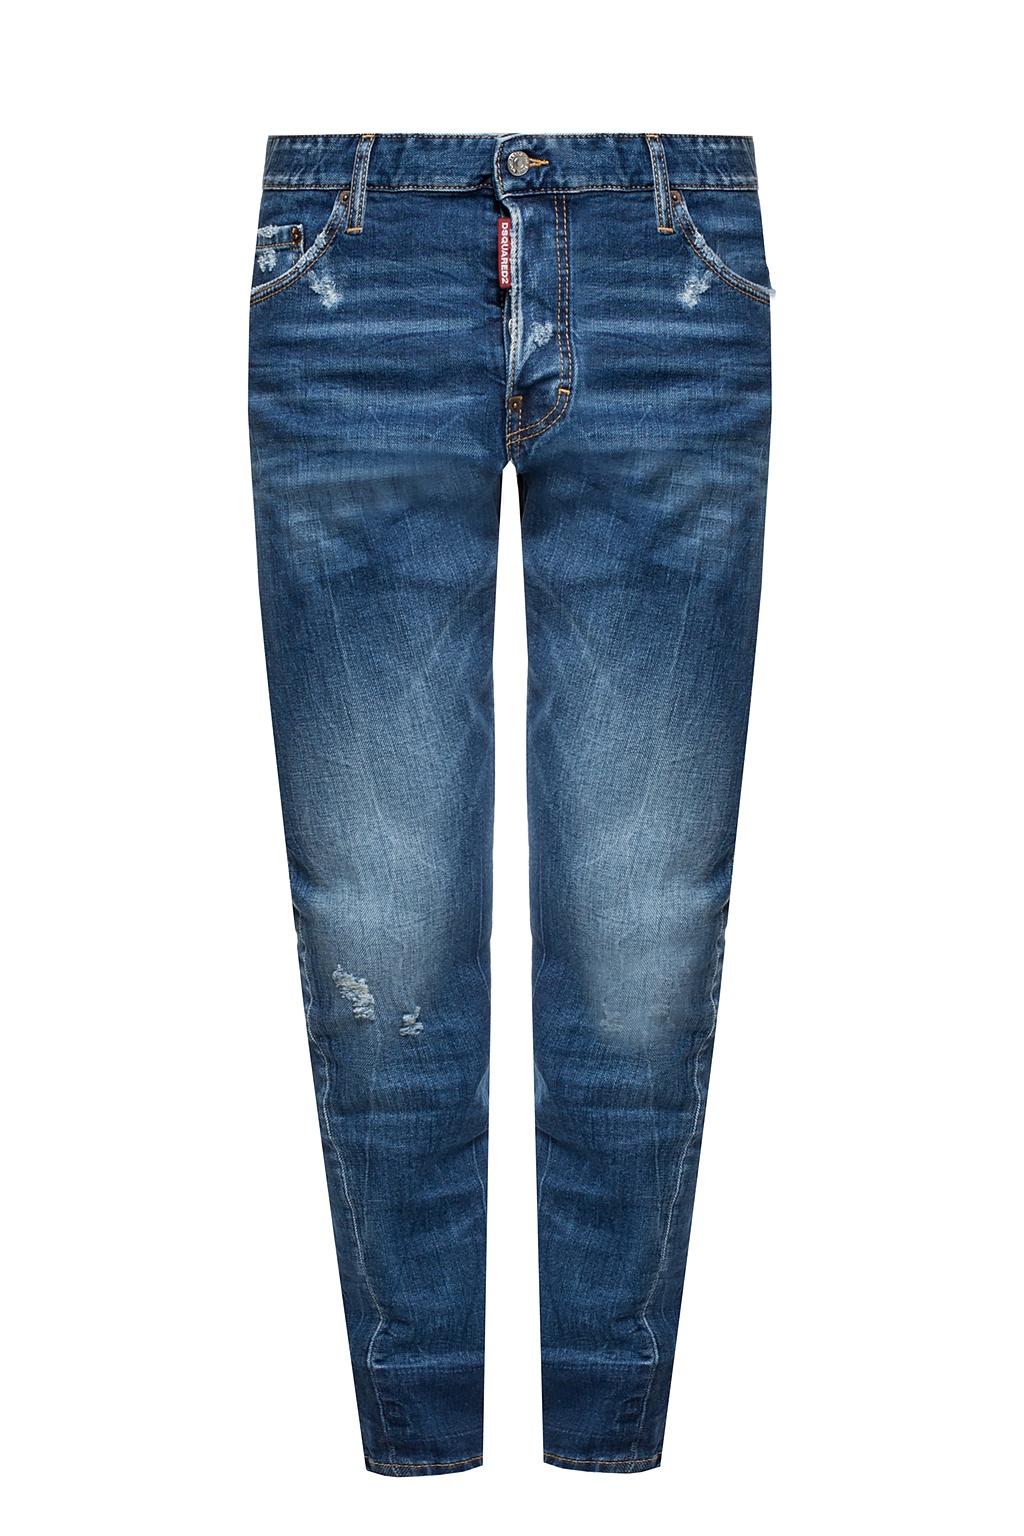 dsquared2 jeans japan